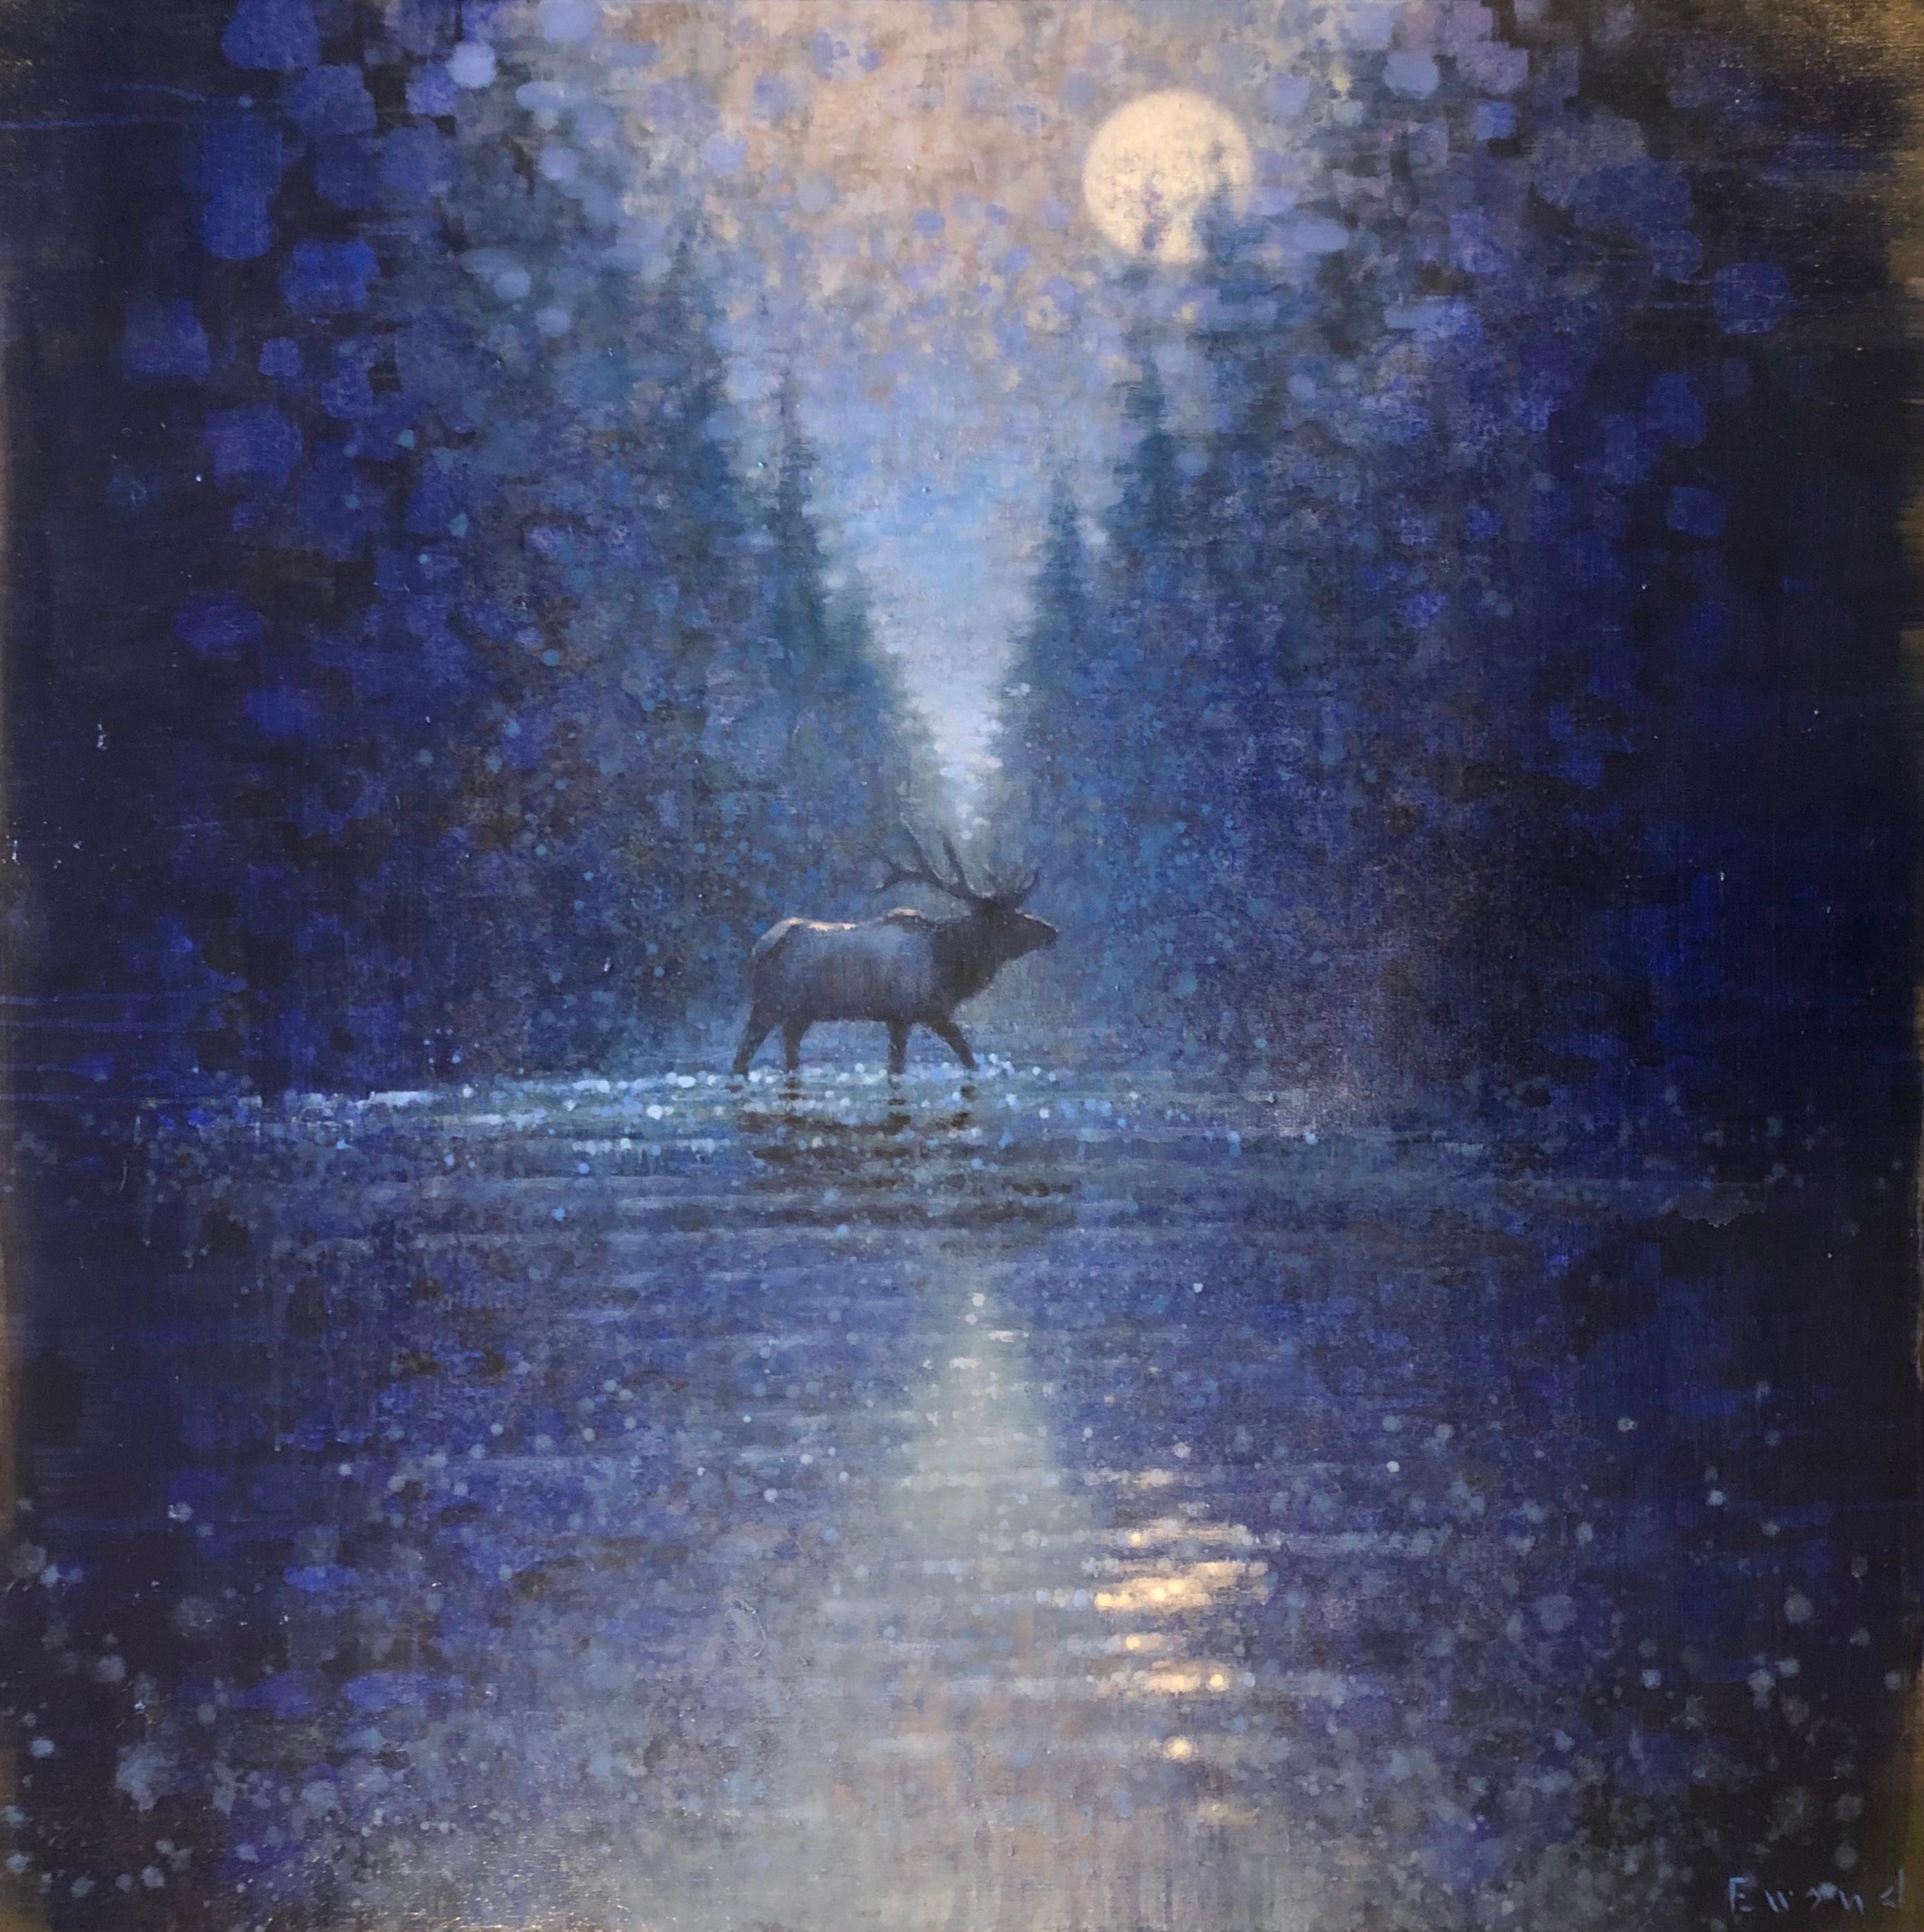 moonlight crossing